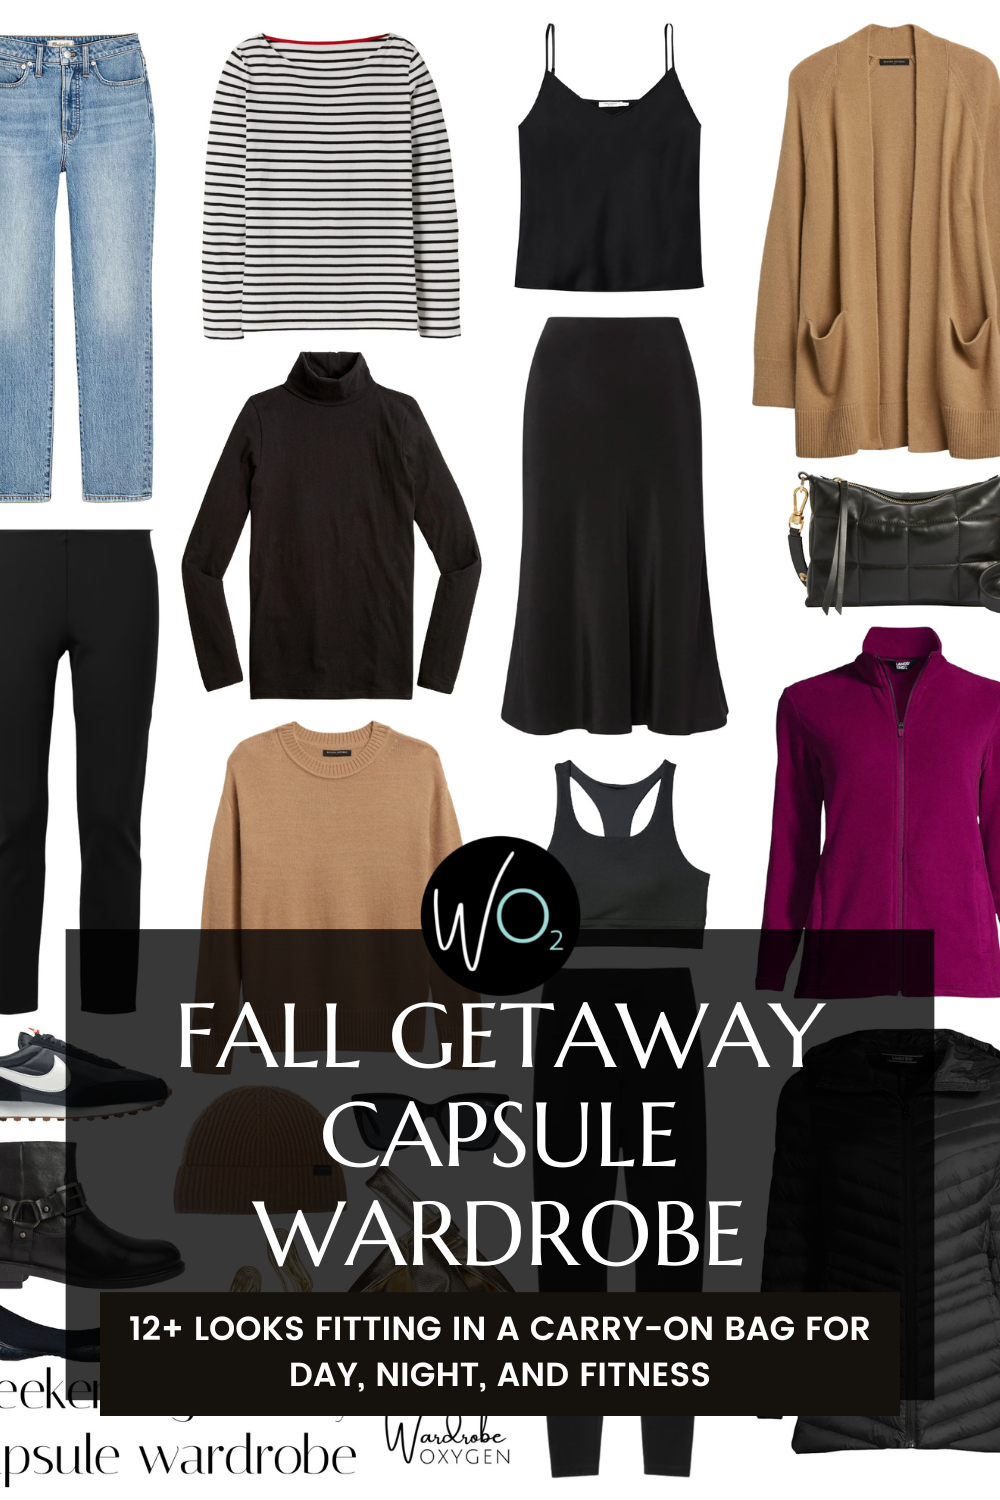 Fall Getaway Capsule Wardrobe: 12 Looks in 1 Carryon Bag